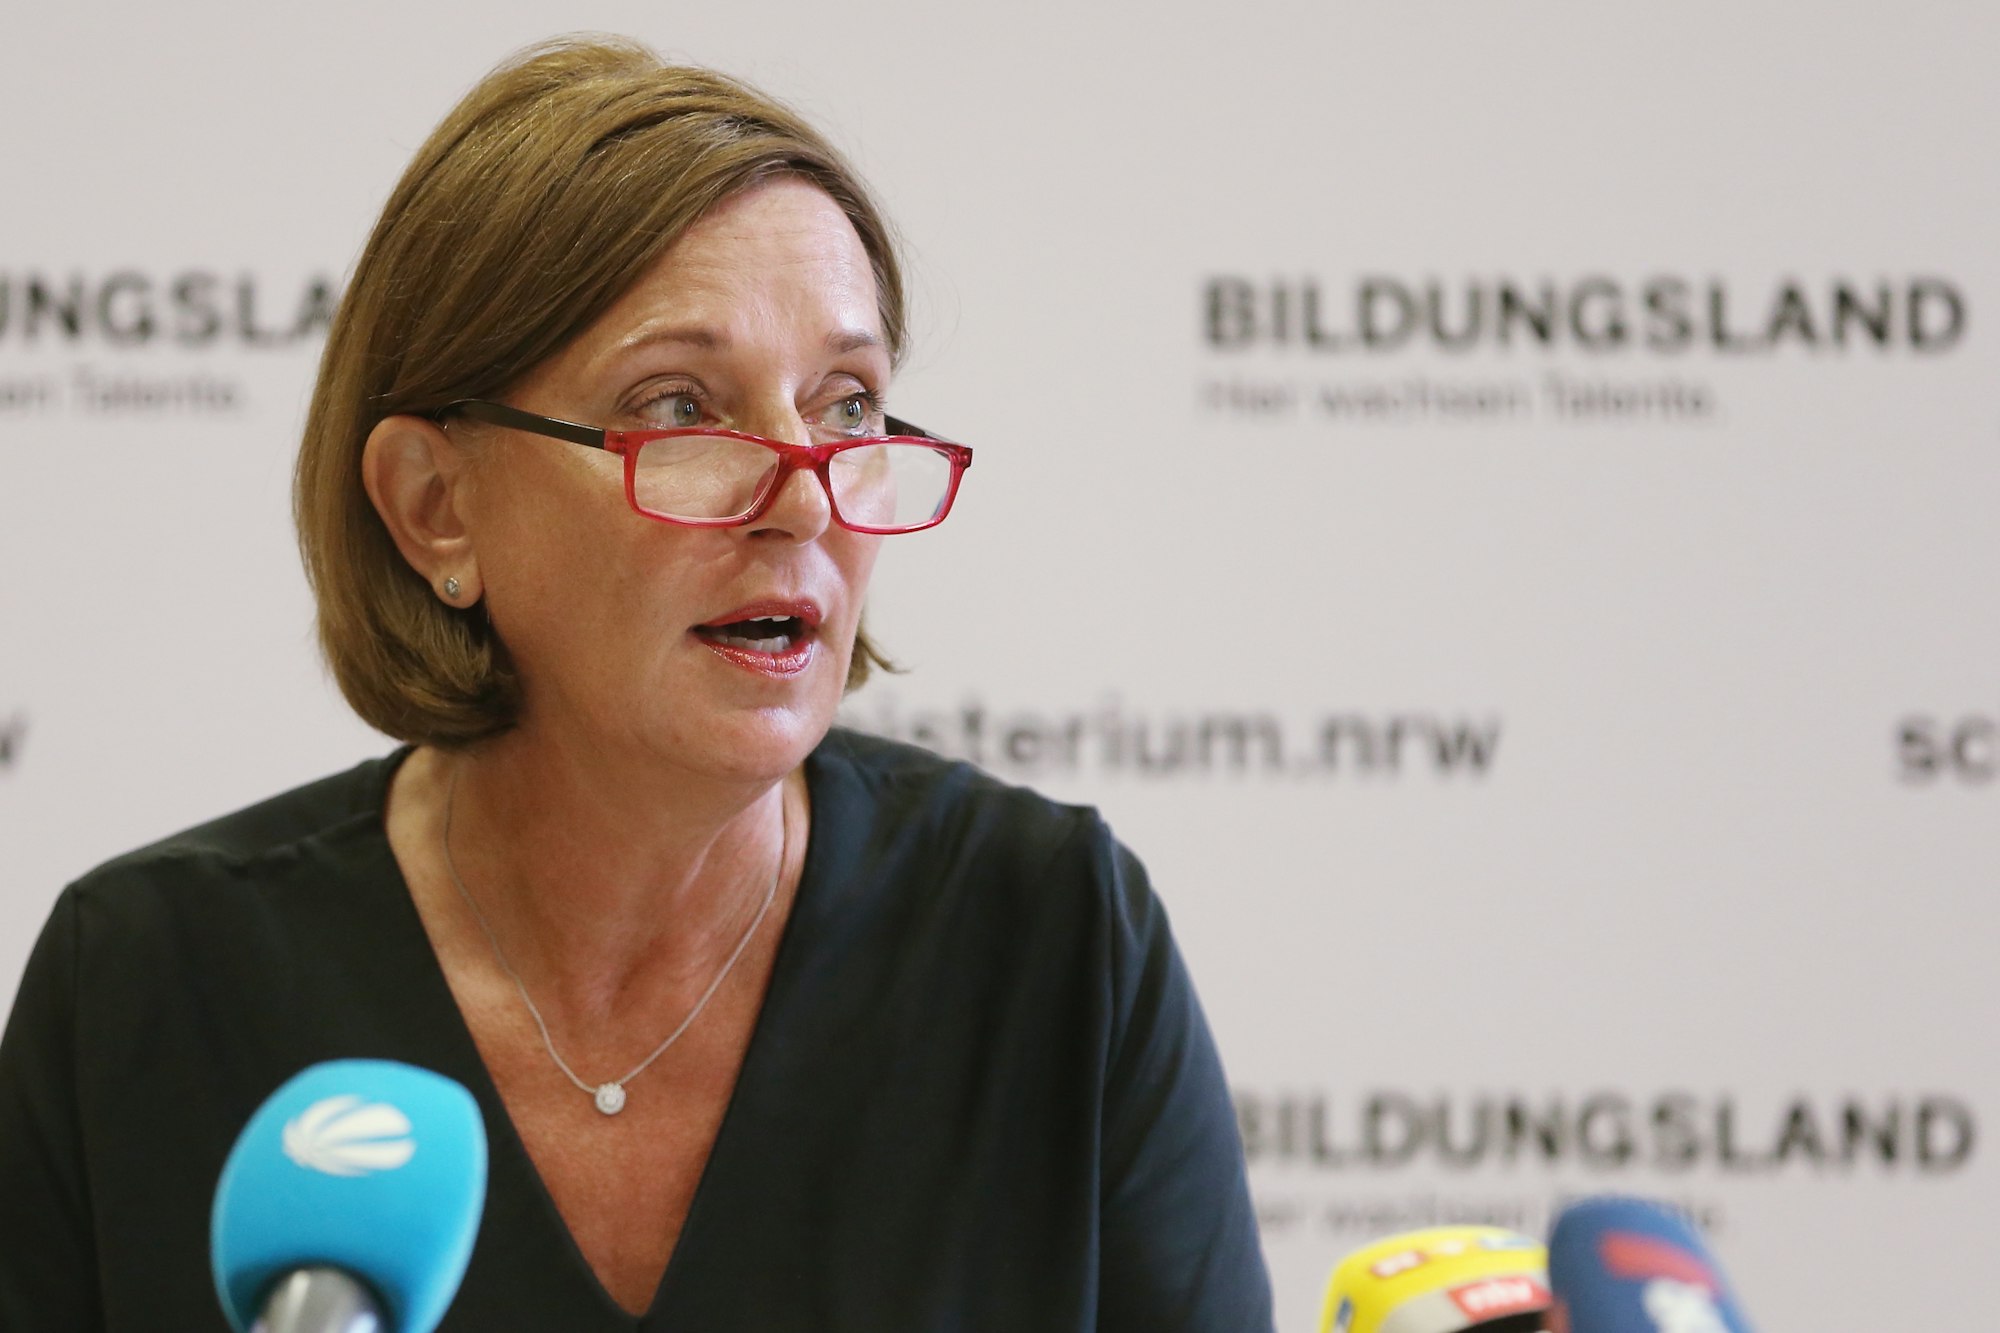 NRW-Schulministerin Yvonne Gebauer spricht bei einem Pressegespräch über aktuelle schulpolitische Themen.